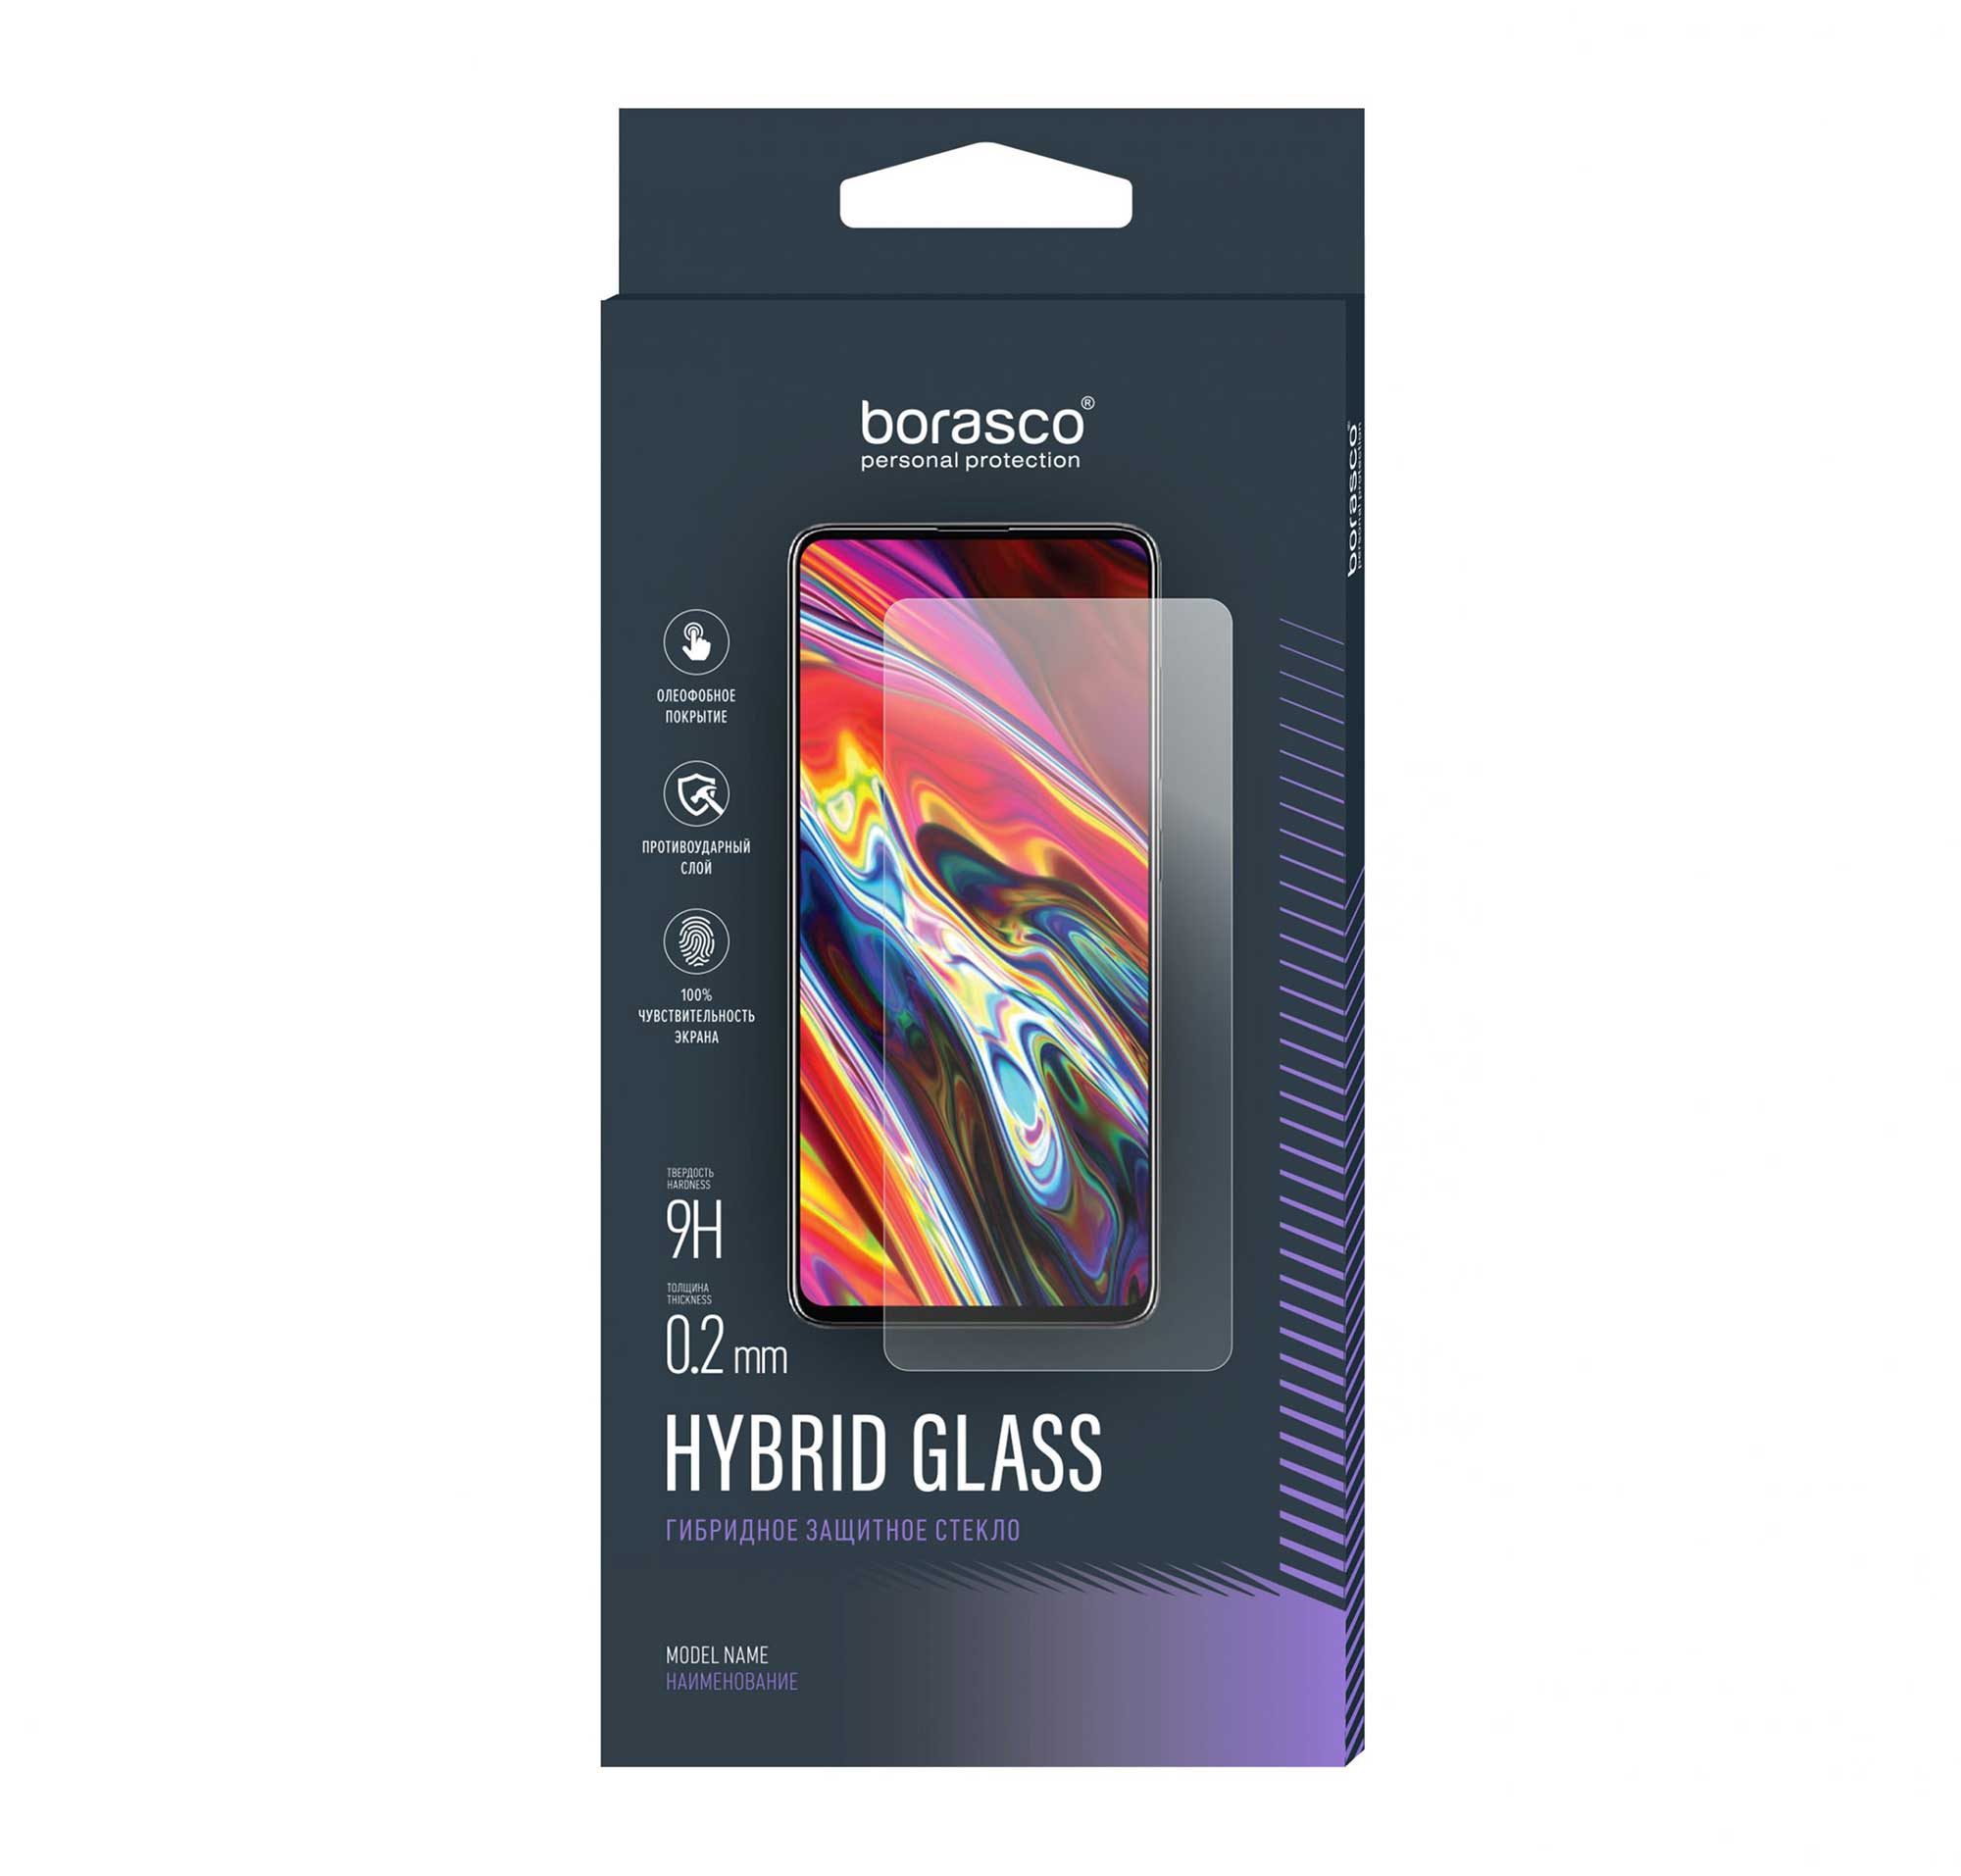 Защитное стекло BoraSCO Hybrid Glass для Nokia G21 чехол mypads волк разбойник для nokia g21 задняя панель накладка бампер